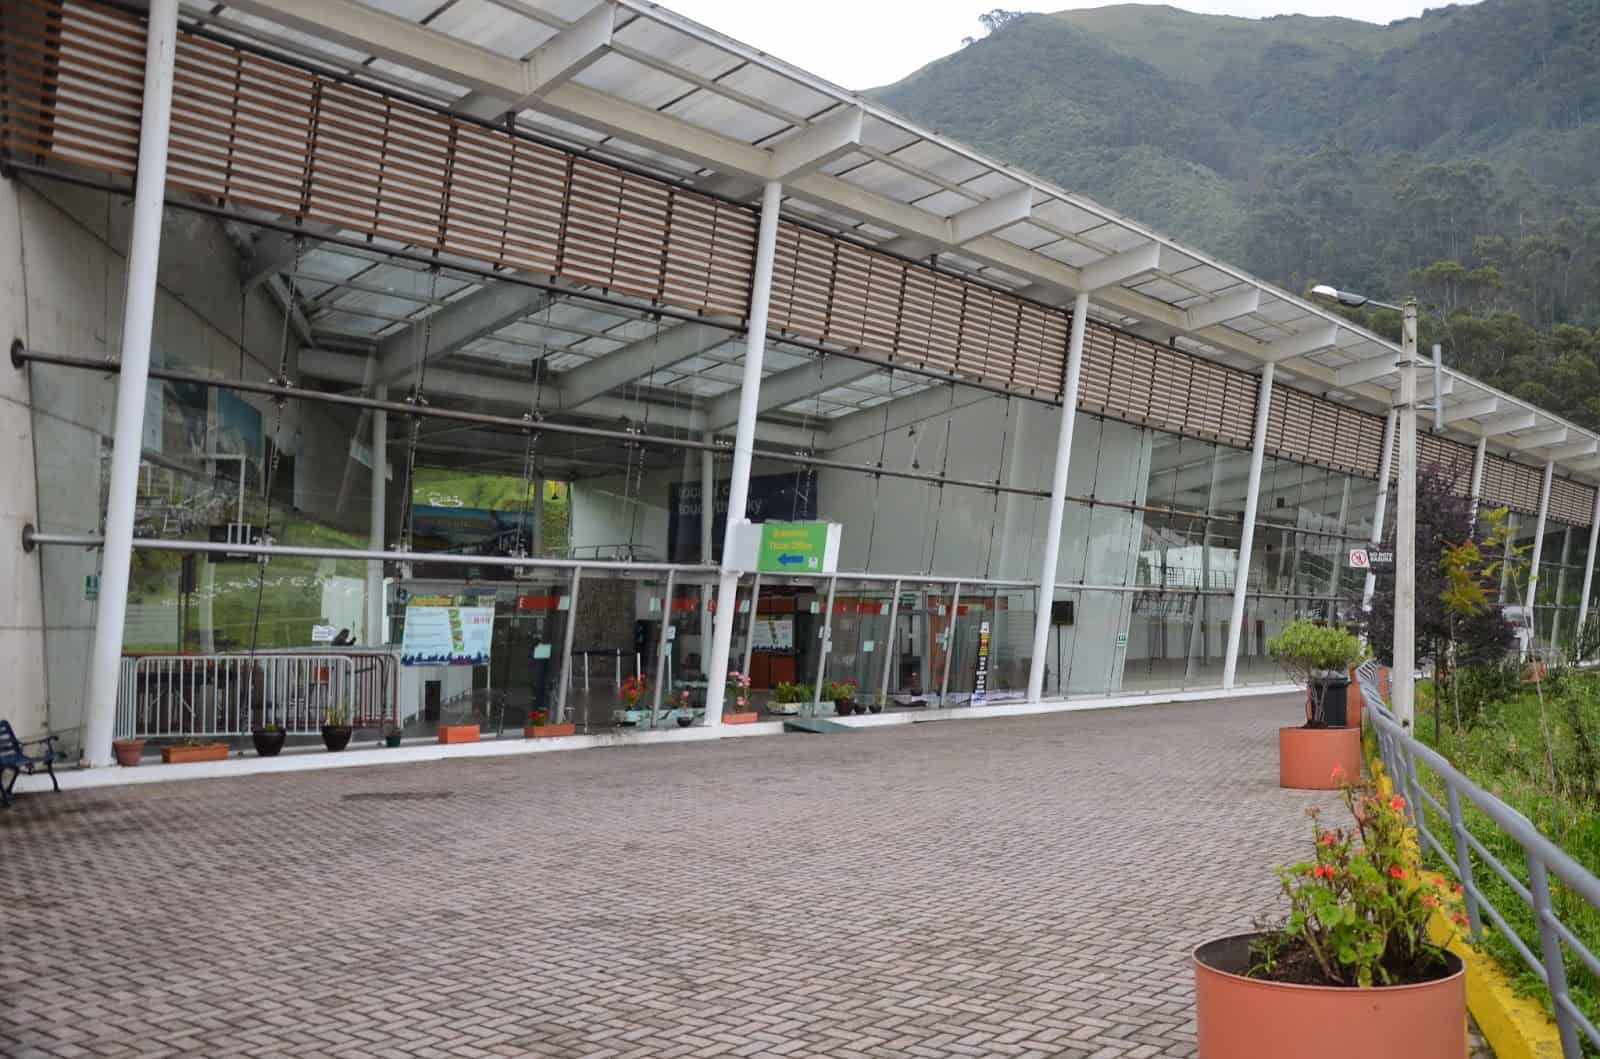 TelefériQo entrance in Quito, Ecuador